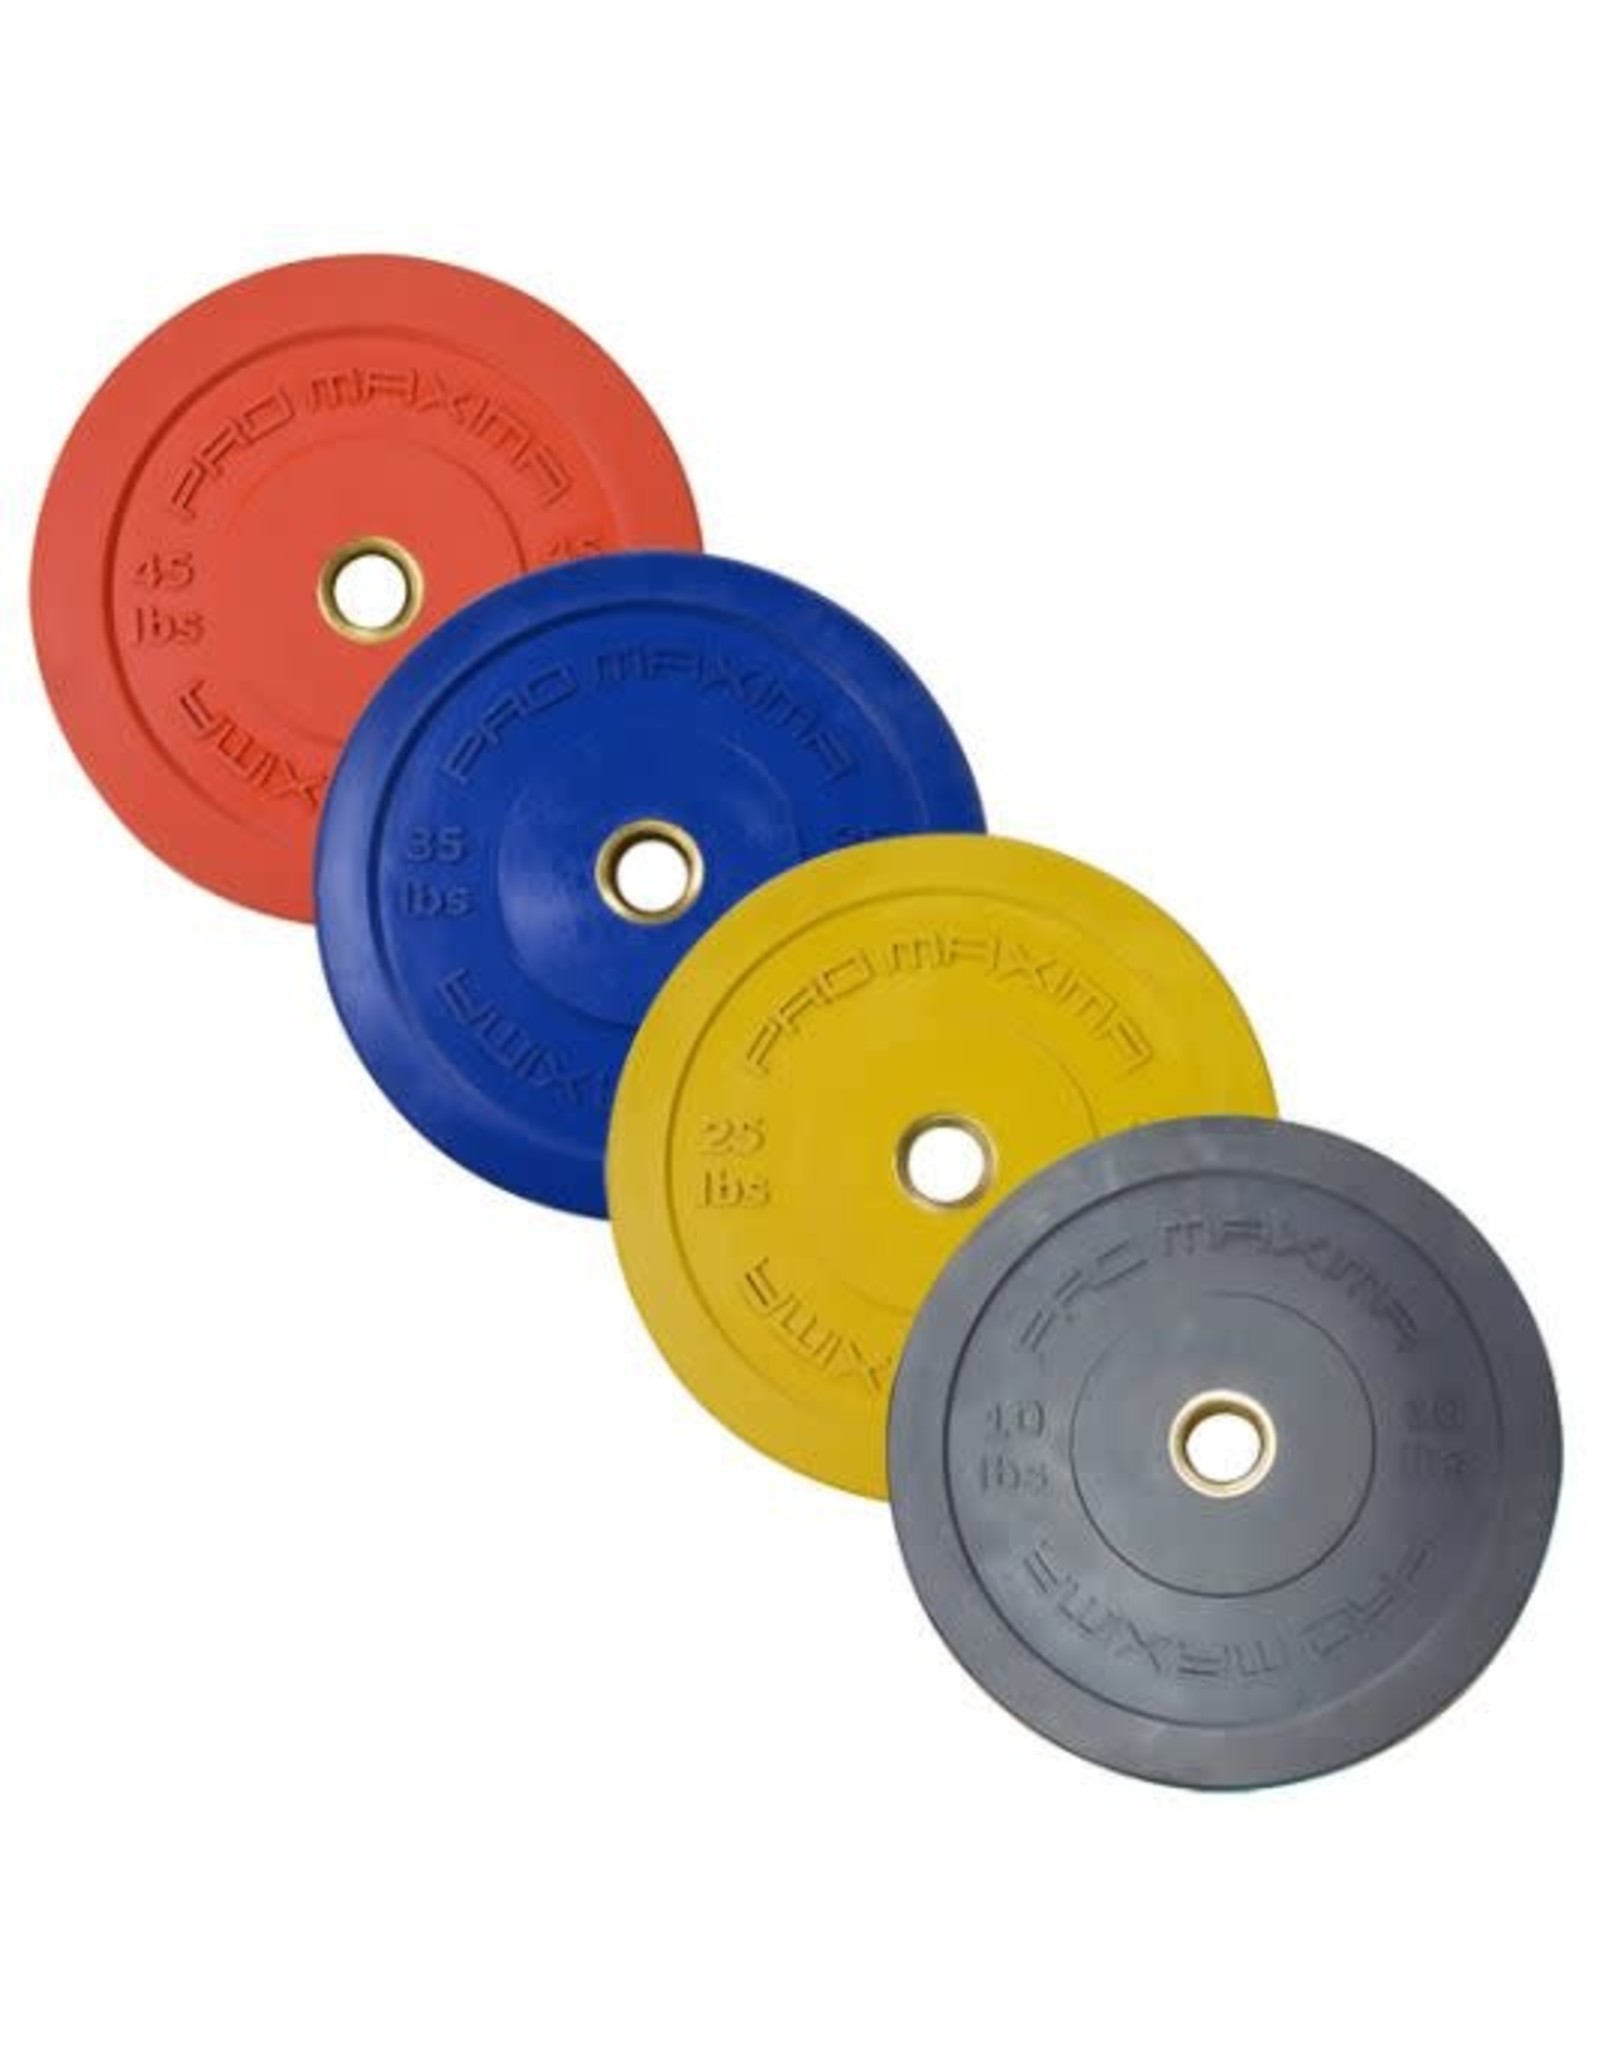 PROMAXIMA PROMAXIMA Rubber Olympic Bumper Plates Color Coded